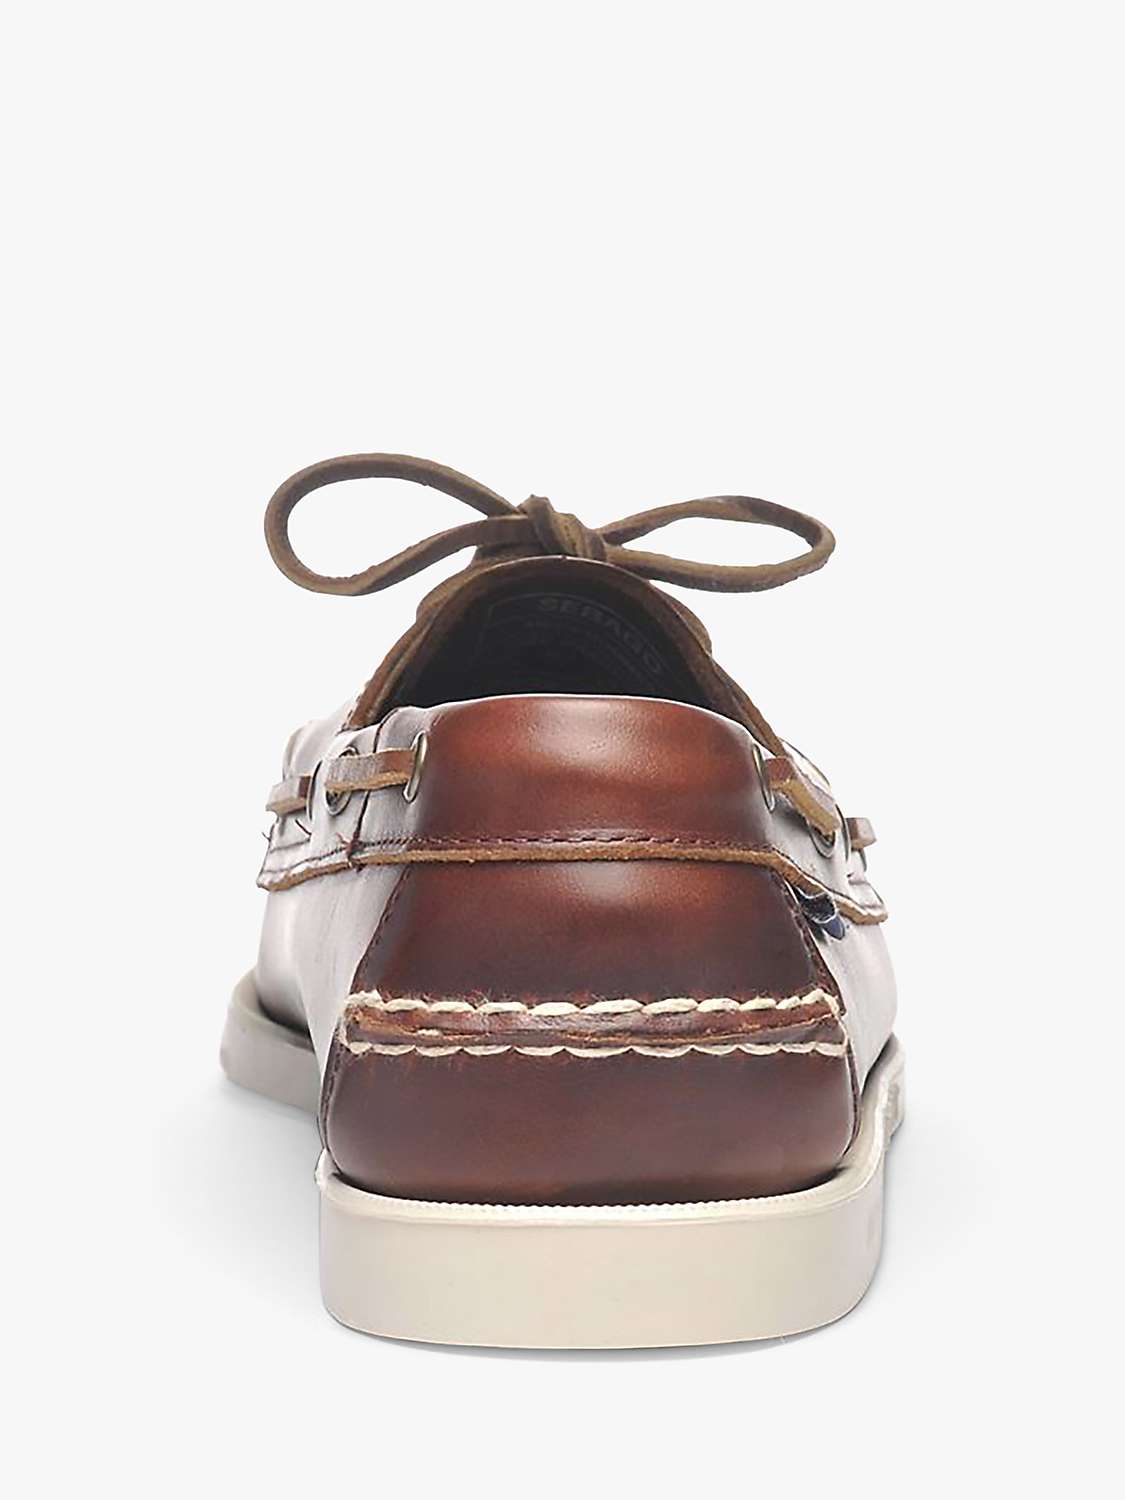 Buy Sebago Docksides FGL Leather Boat Shoes, Brown Online at johnlewis.com